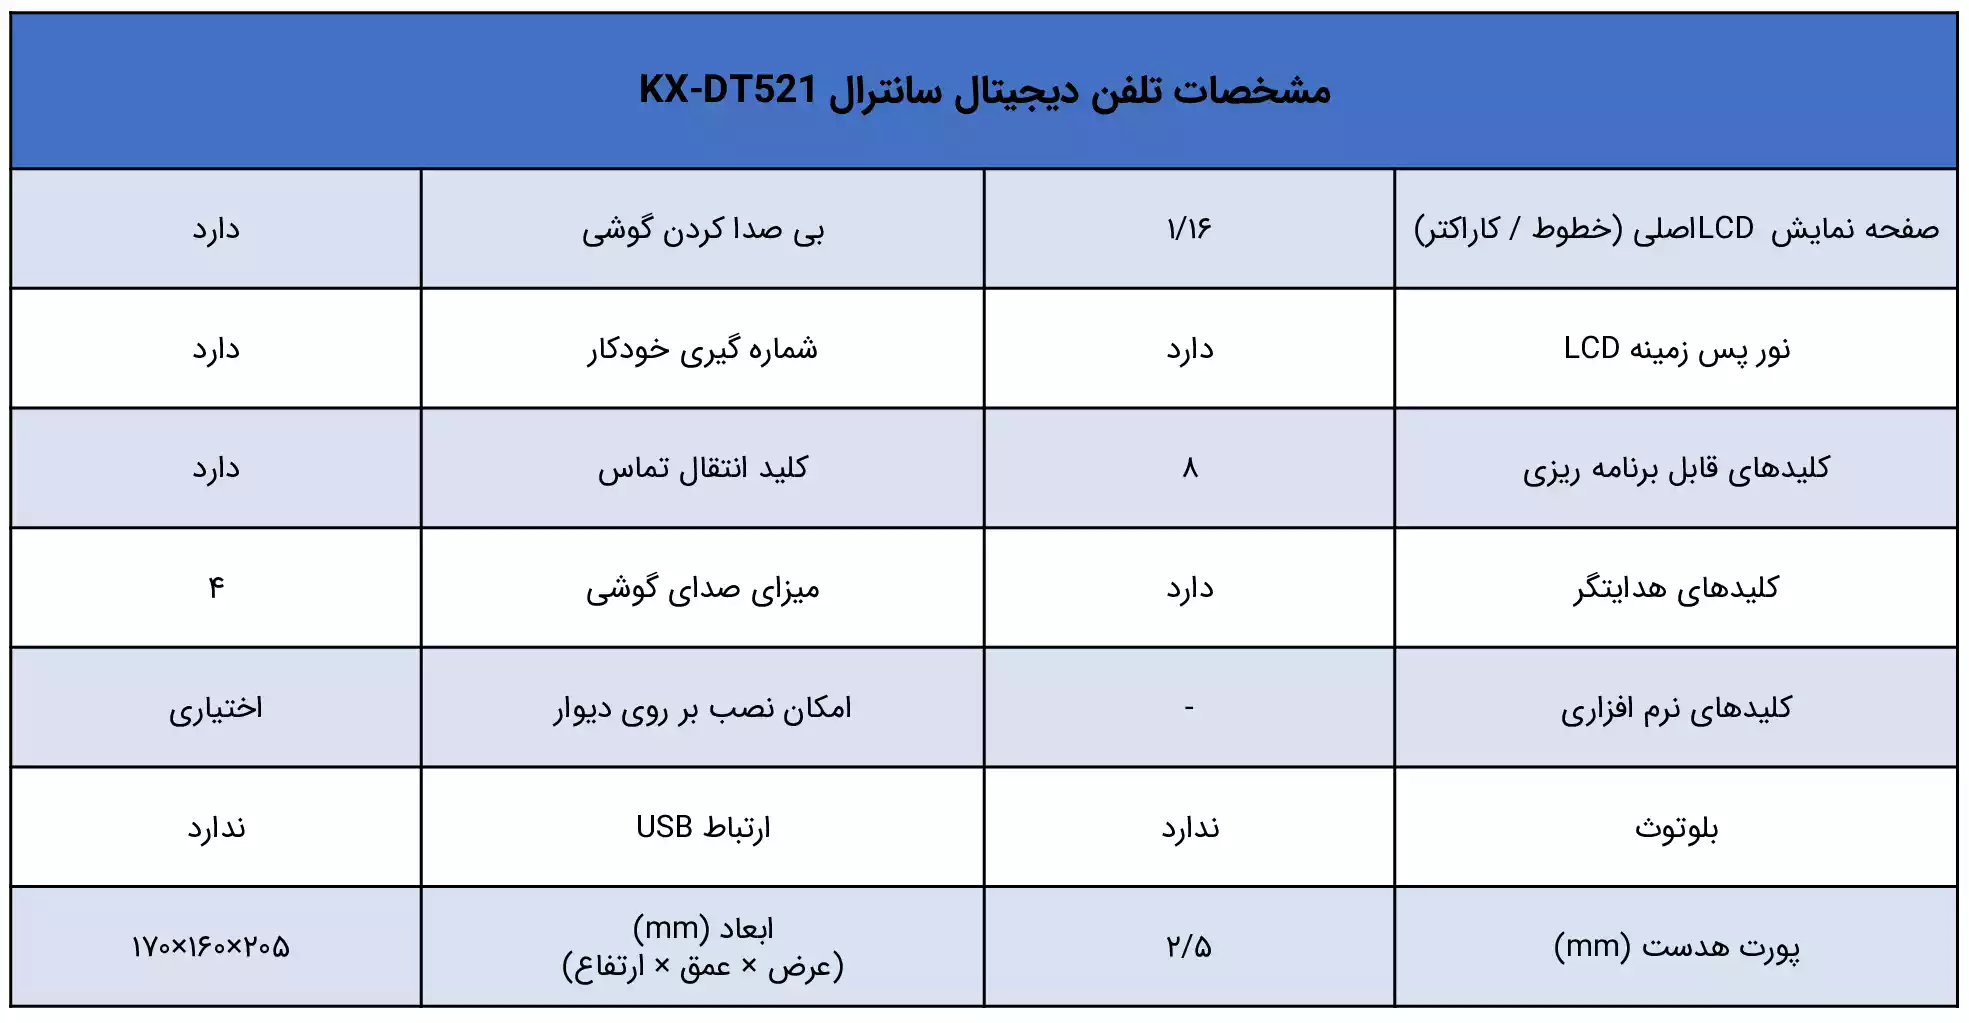 مشخصات تلفن سانترال پاناسونیک KX-DT521 - ماه صنعت انرژی